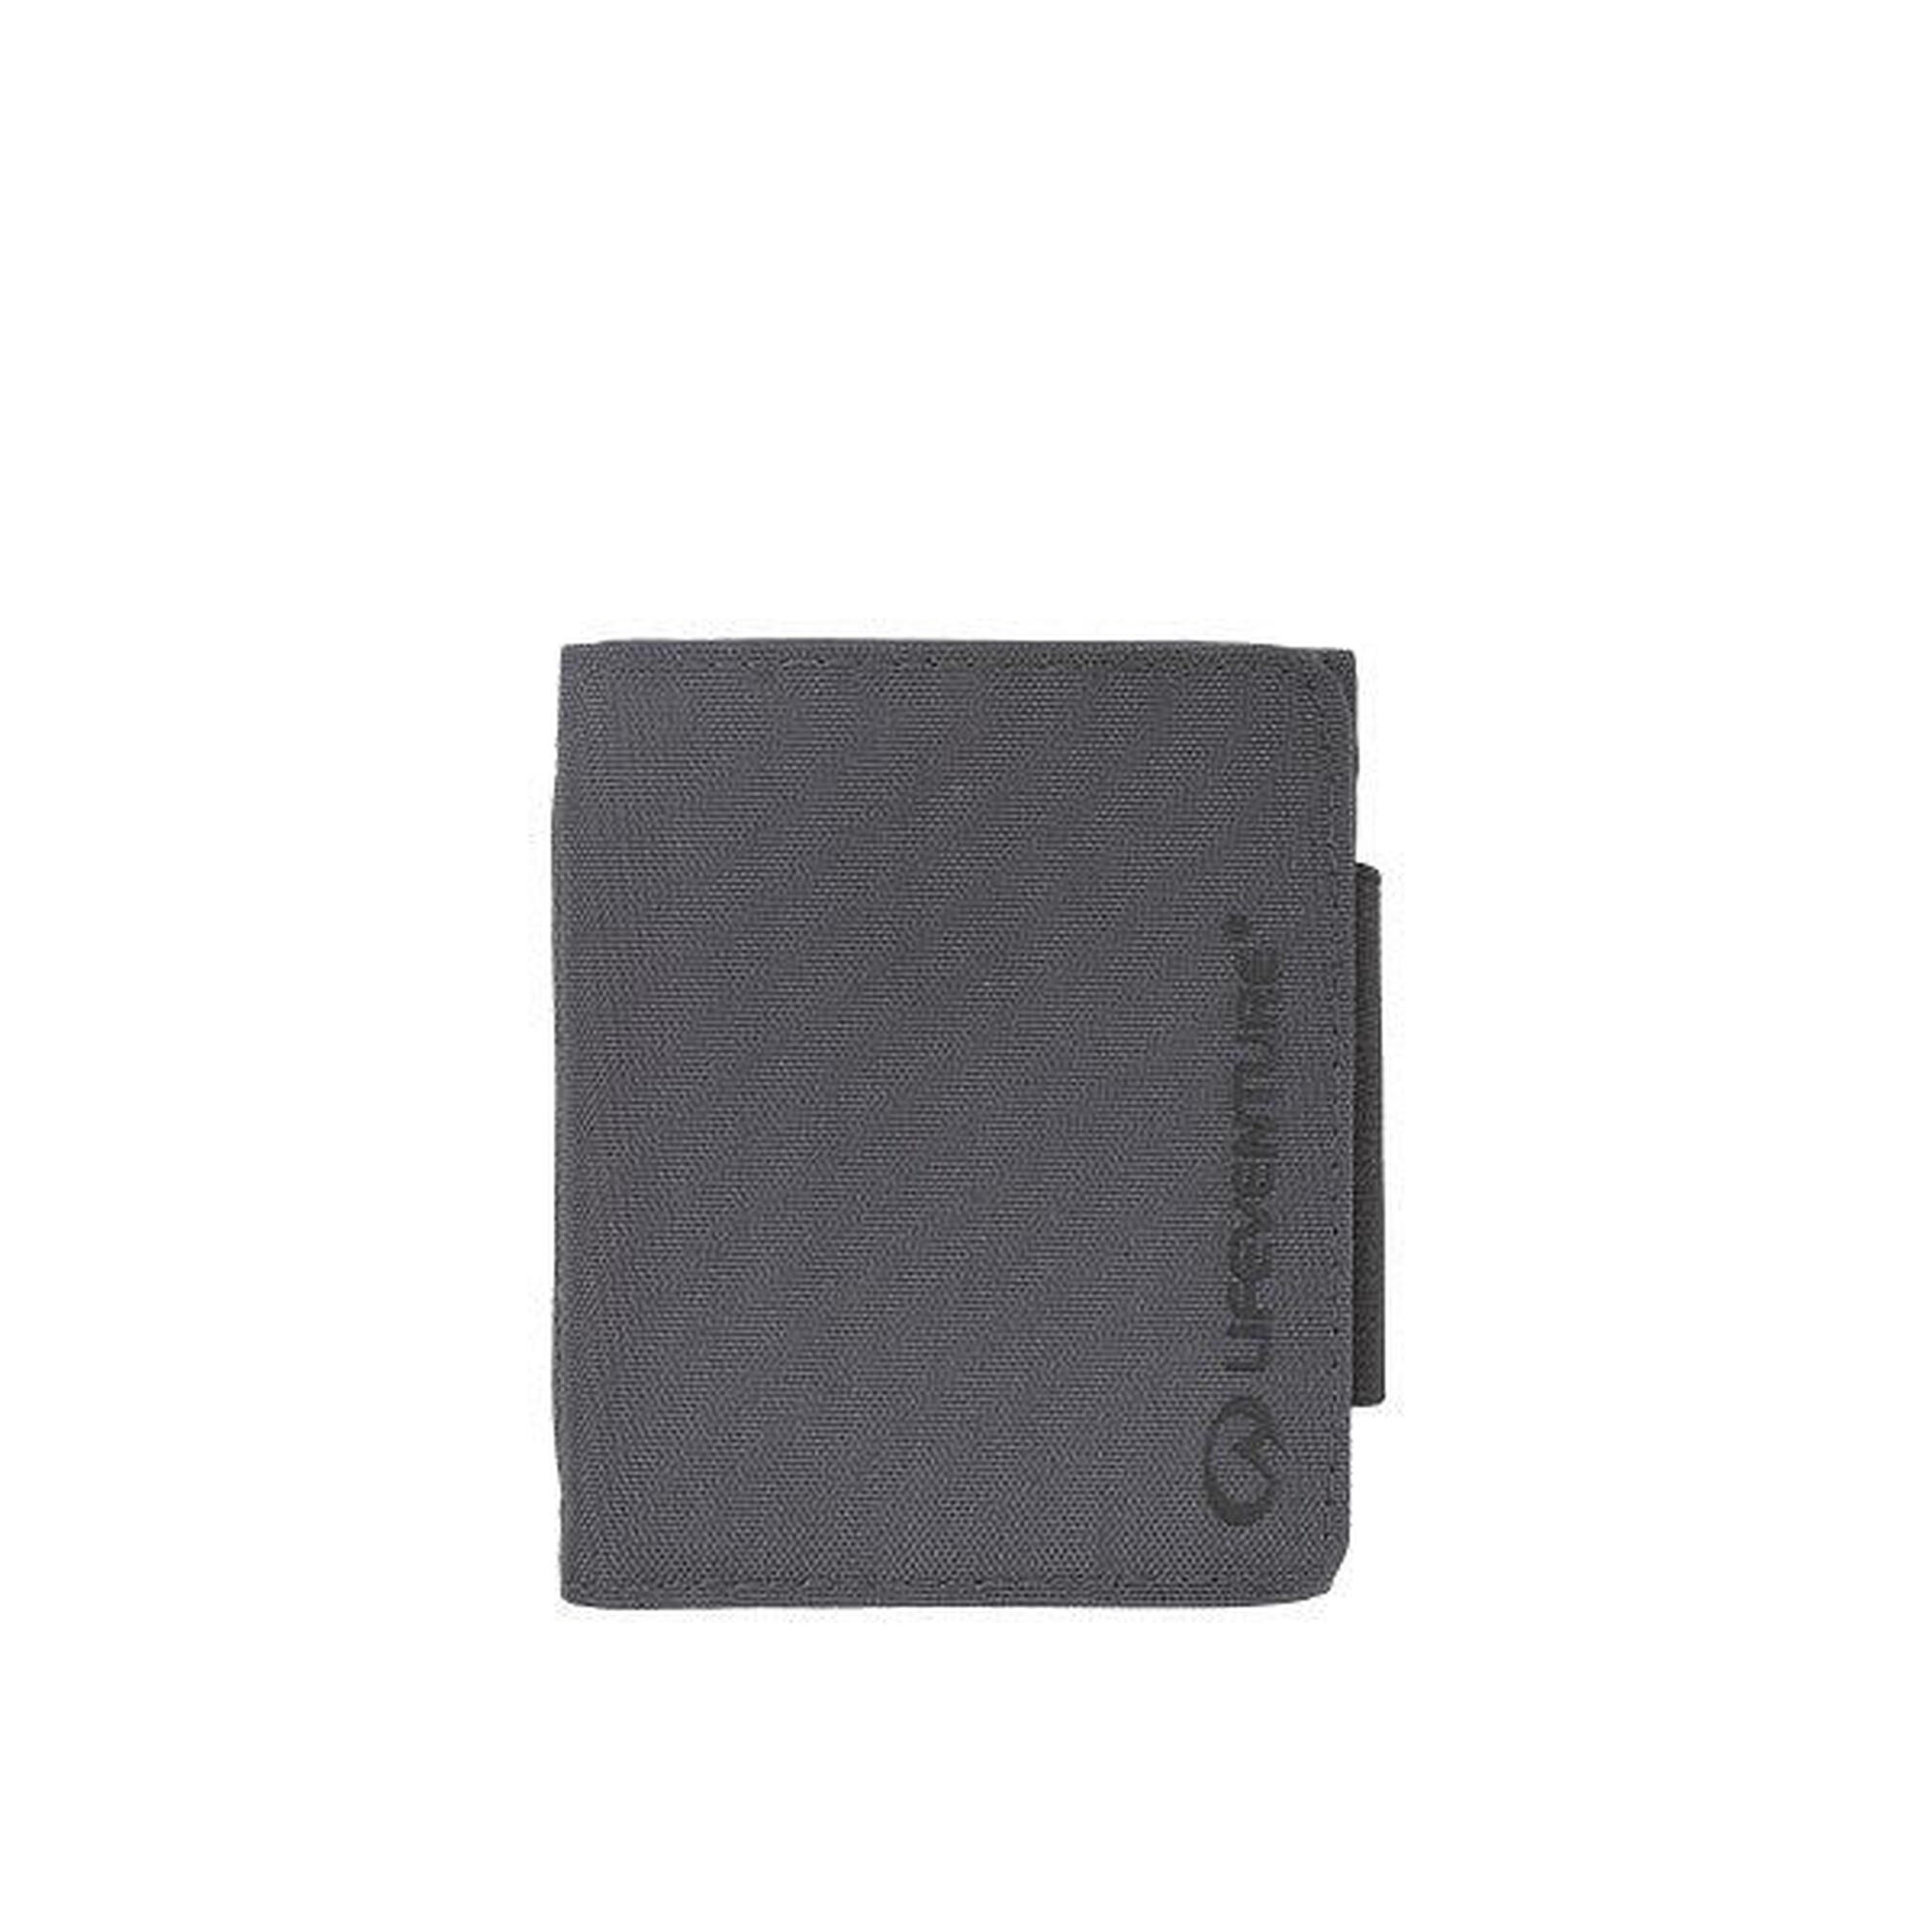 環保防盜RFID卡錢包 (6卡插槽) - 灰色